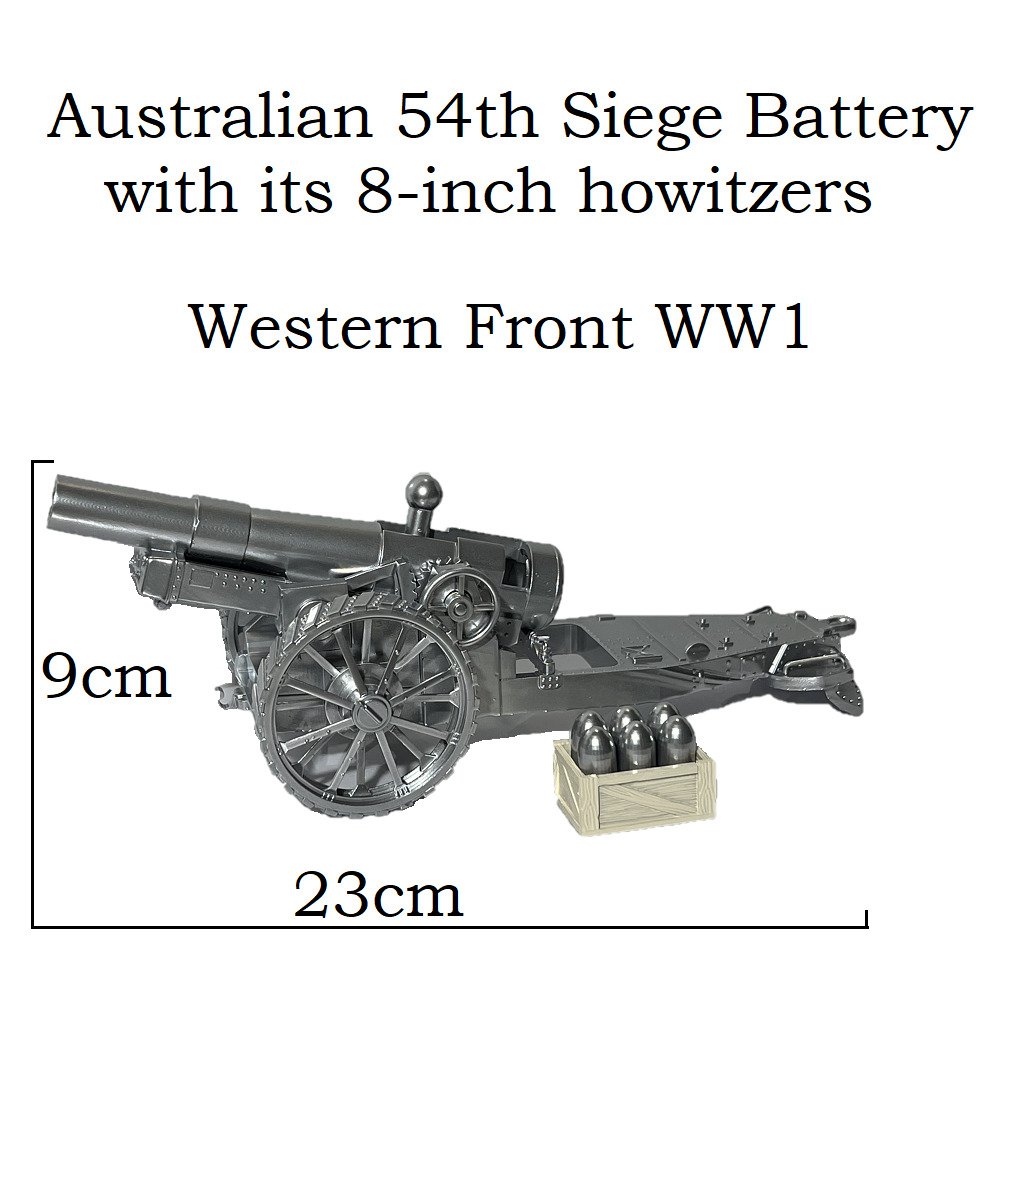 ANZAC Western Front WW1 Australian 1916 Cannon Howitzers Artillery Model